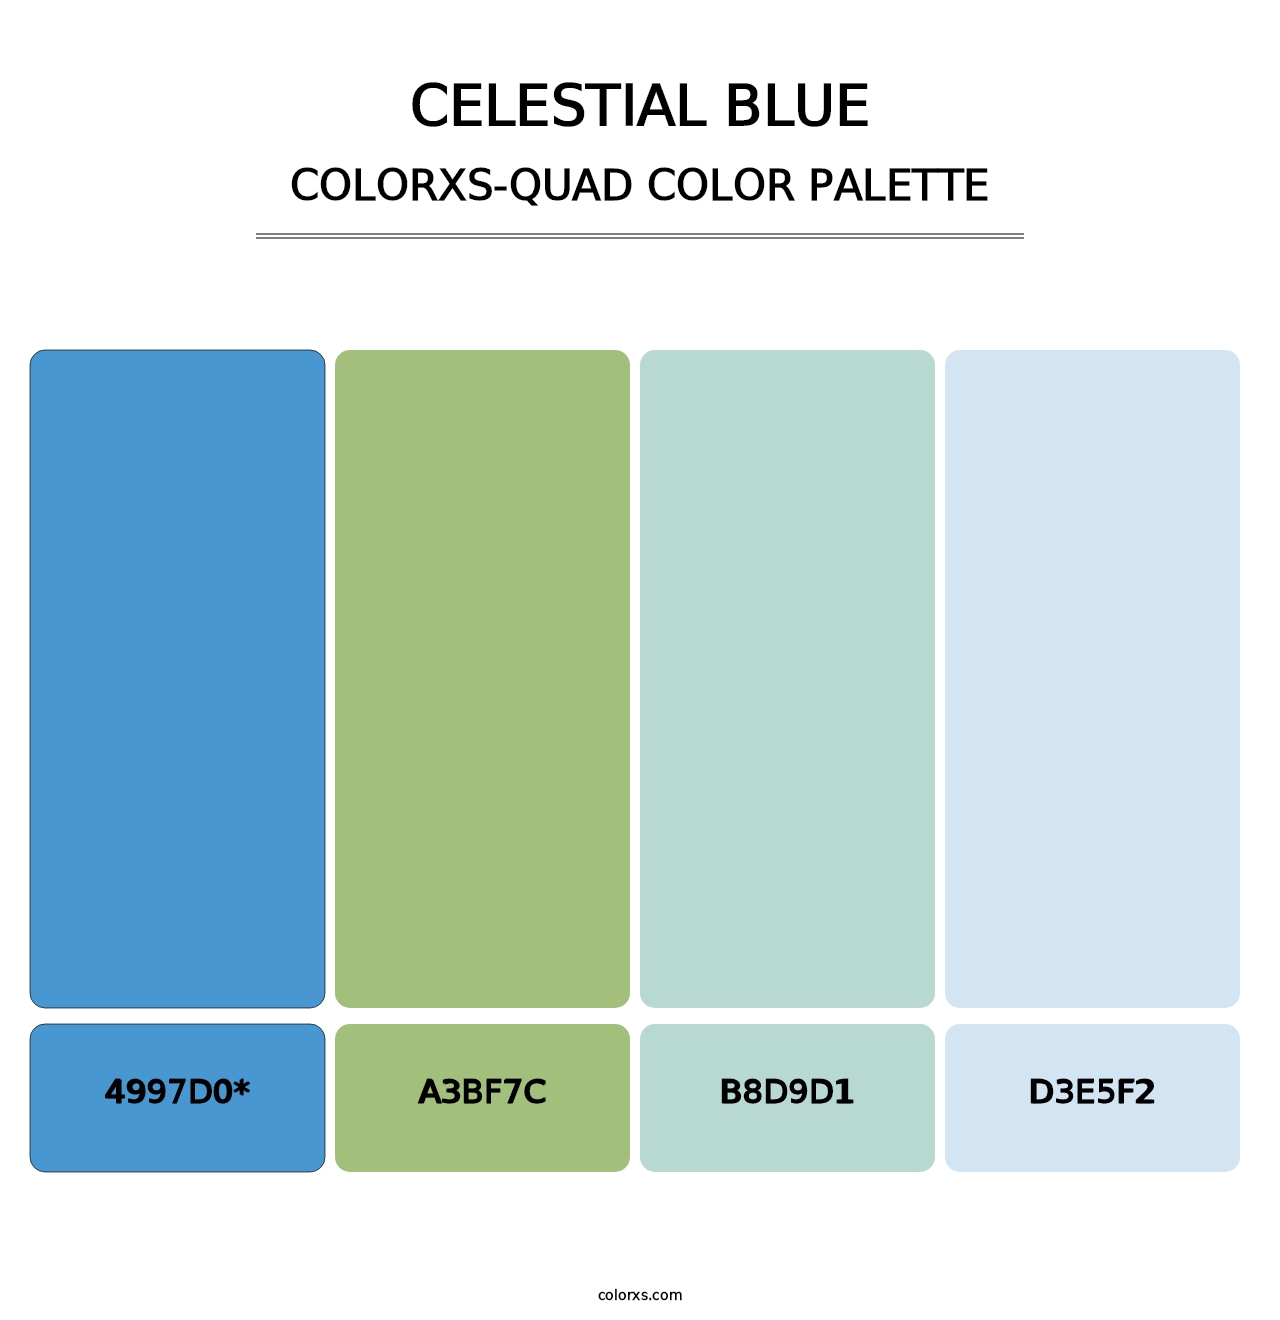 Celestial Blue - Colorxs Quad Palette